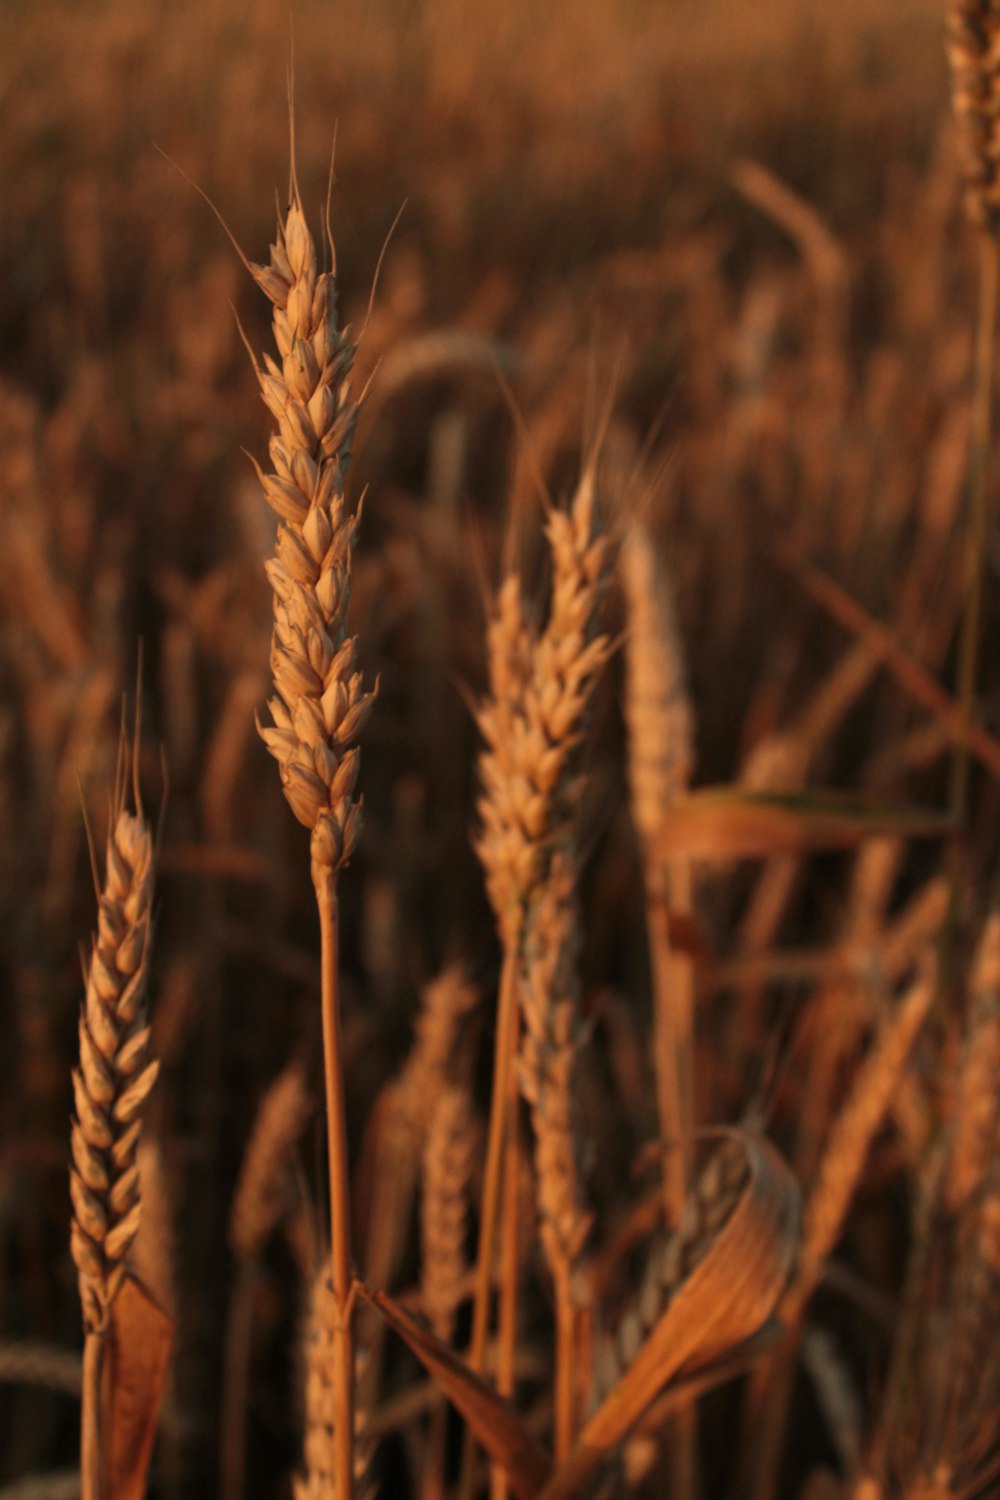 日中の褐色小麦畑